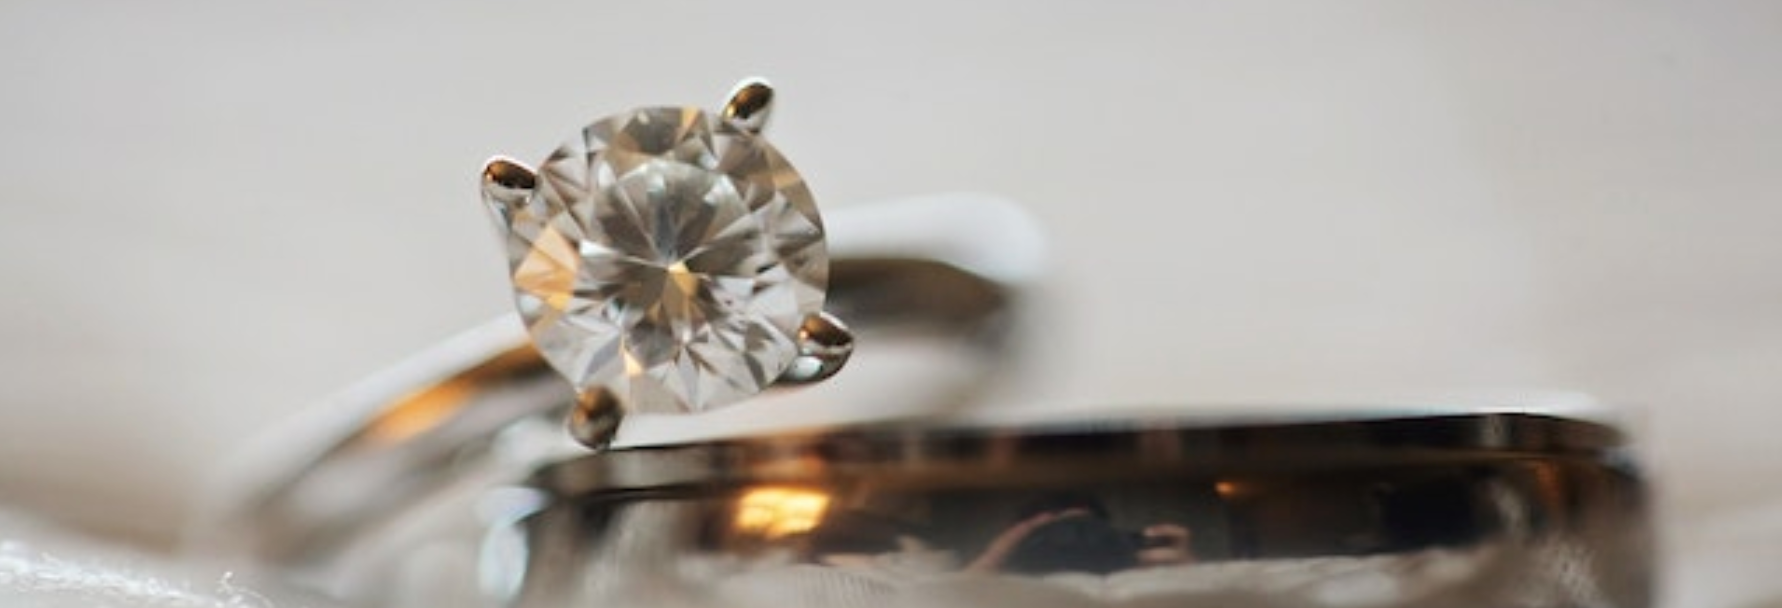 Le diamant de synthèse : tout ce qu'il faut savoir pour faire le bon choix